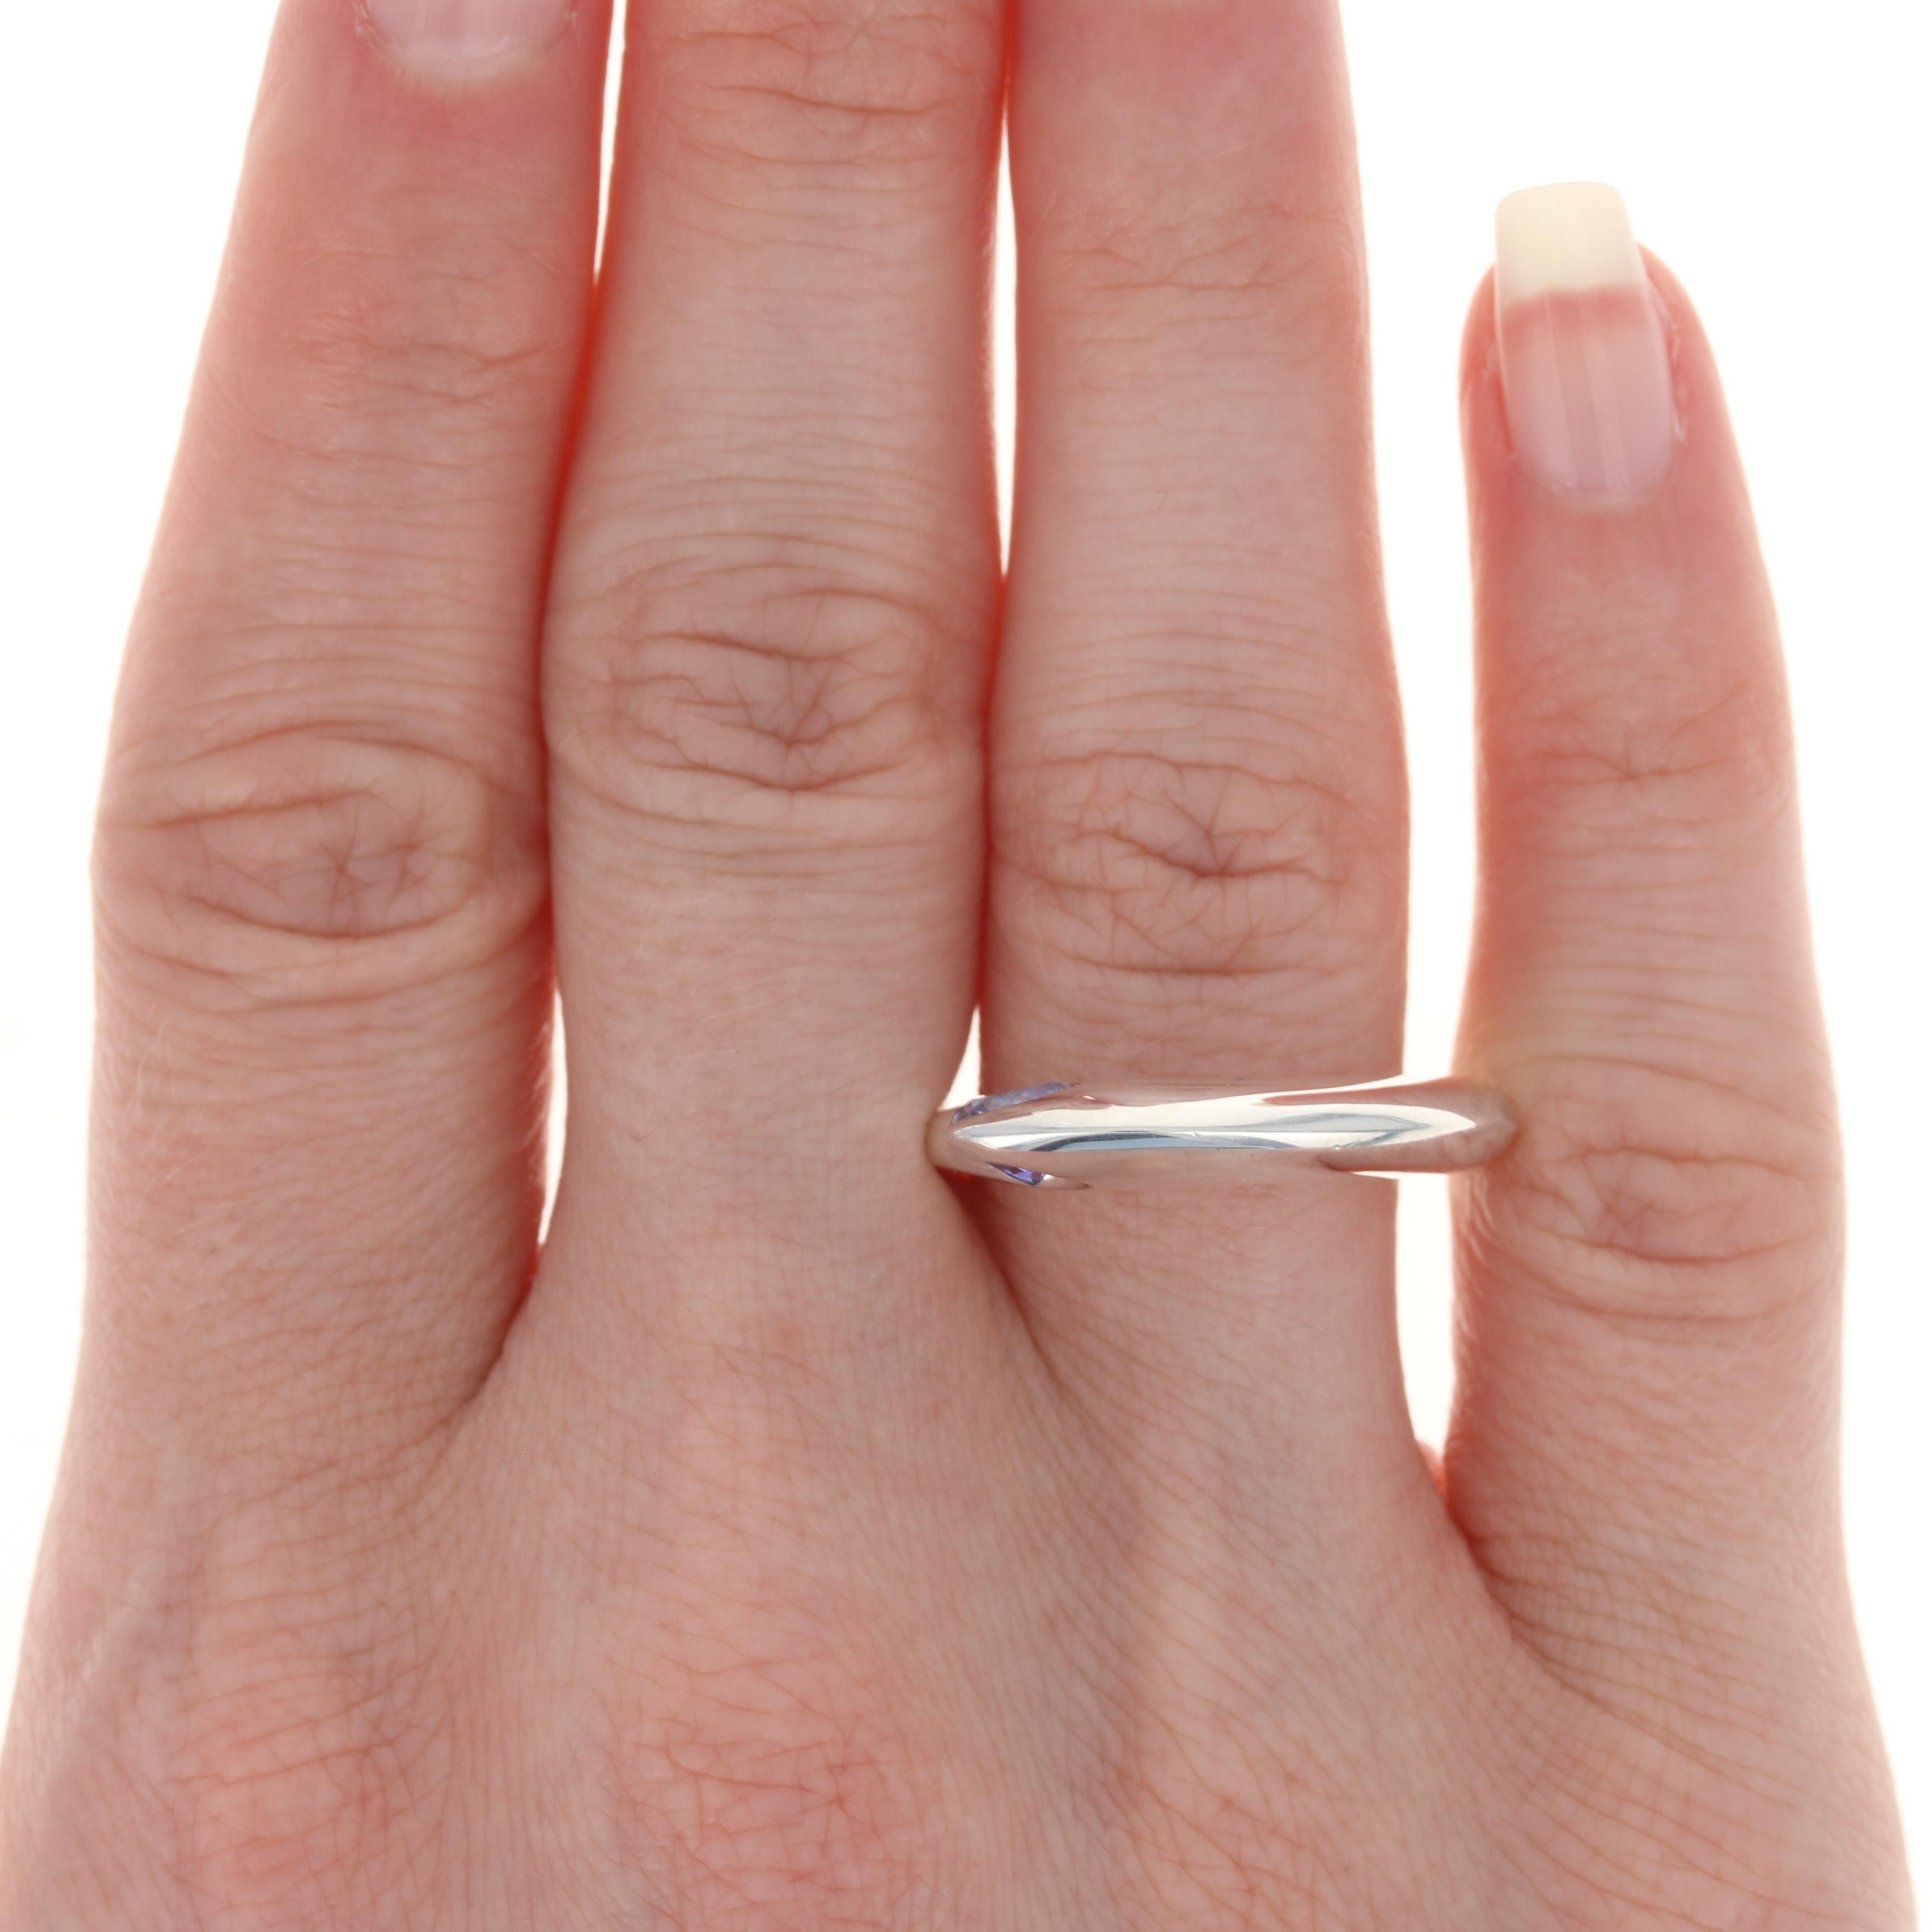 Dieser Ring kostet $200 

Dieser Ring ist eine Größe 7 1/2 - 7 3/4. Bitte kontaktieren Sie uns für weitere Größenoptionen.

Metallgehalt: Sterling Silber
Ausführung: Poliert
 
Informationen zum Stein:
Echter Topas - 
Behandlung: Cotaing
Farbe: